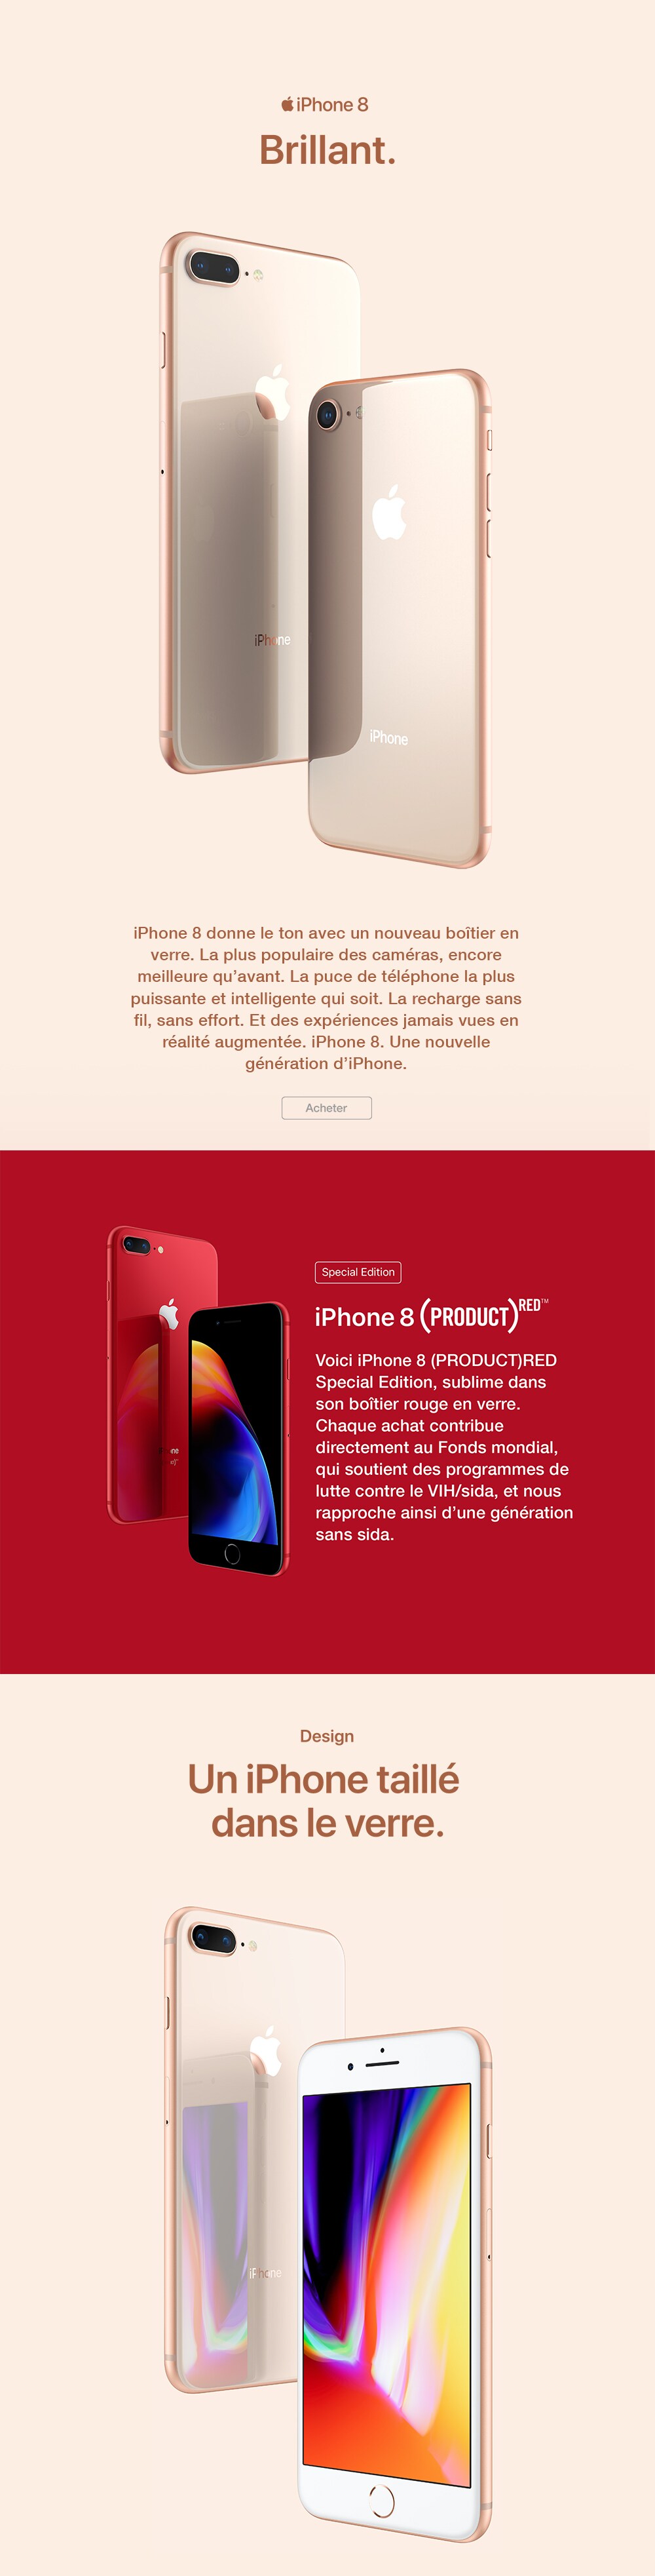 RiverPage_iPhone8_Red_Desktop_FR.jpg